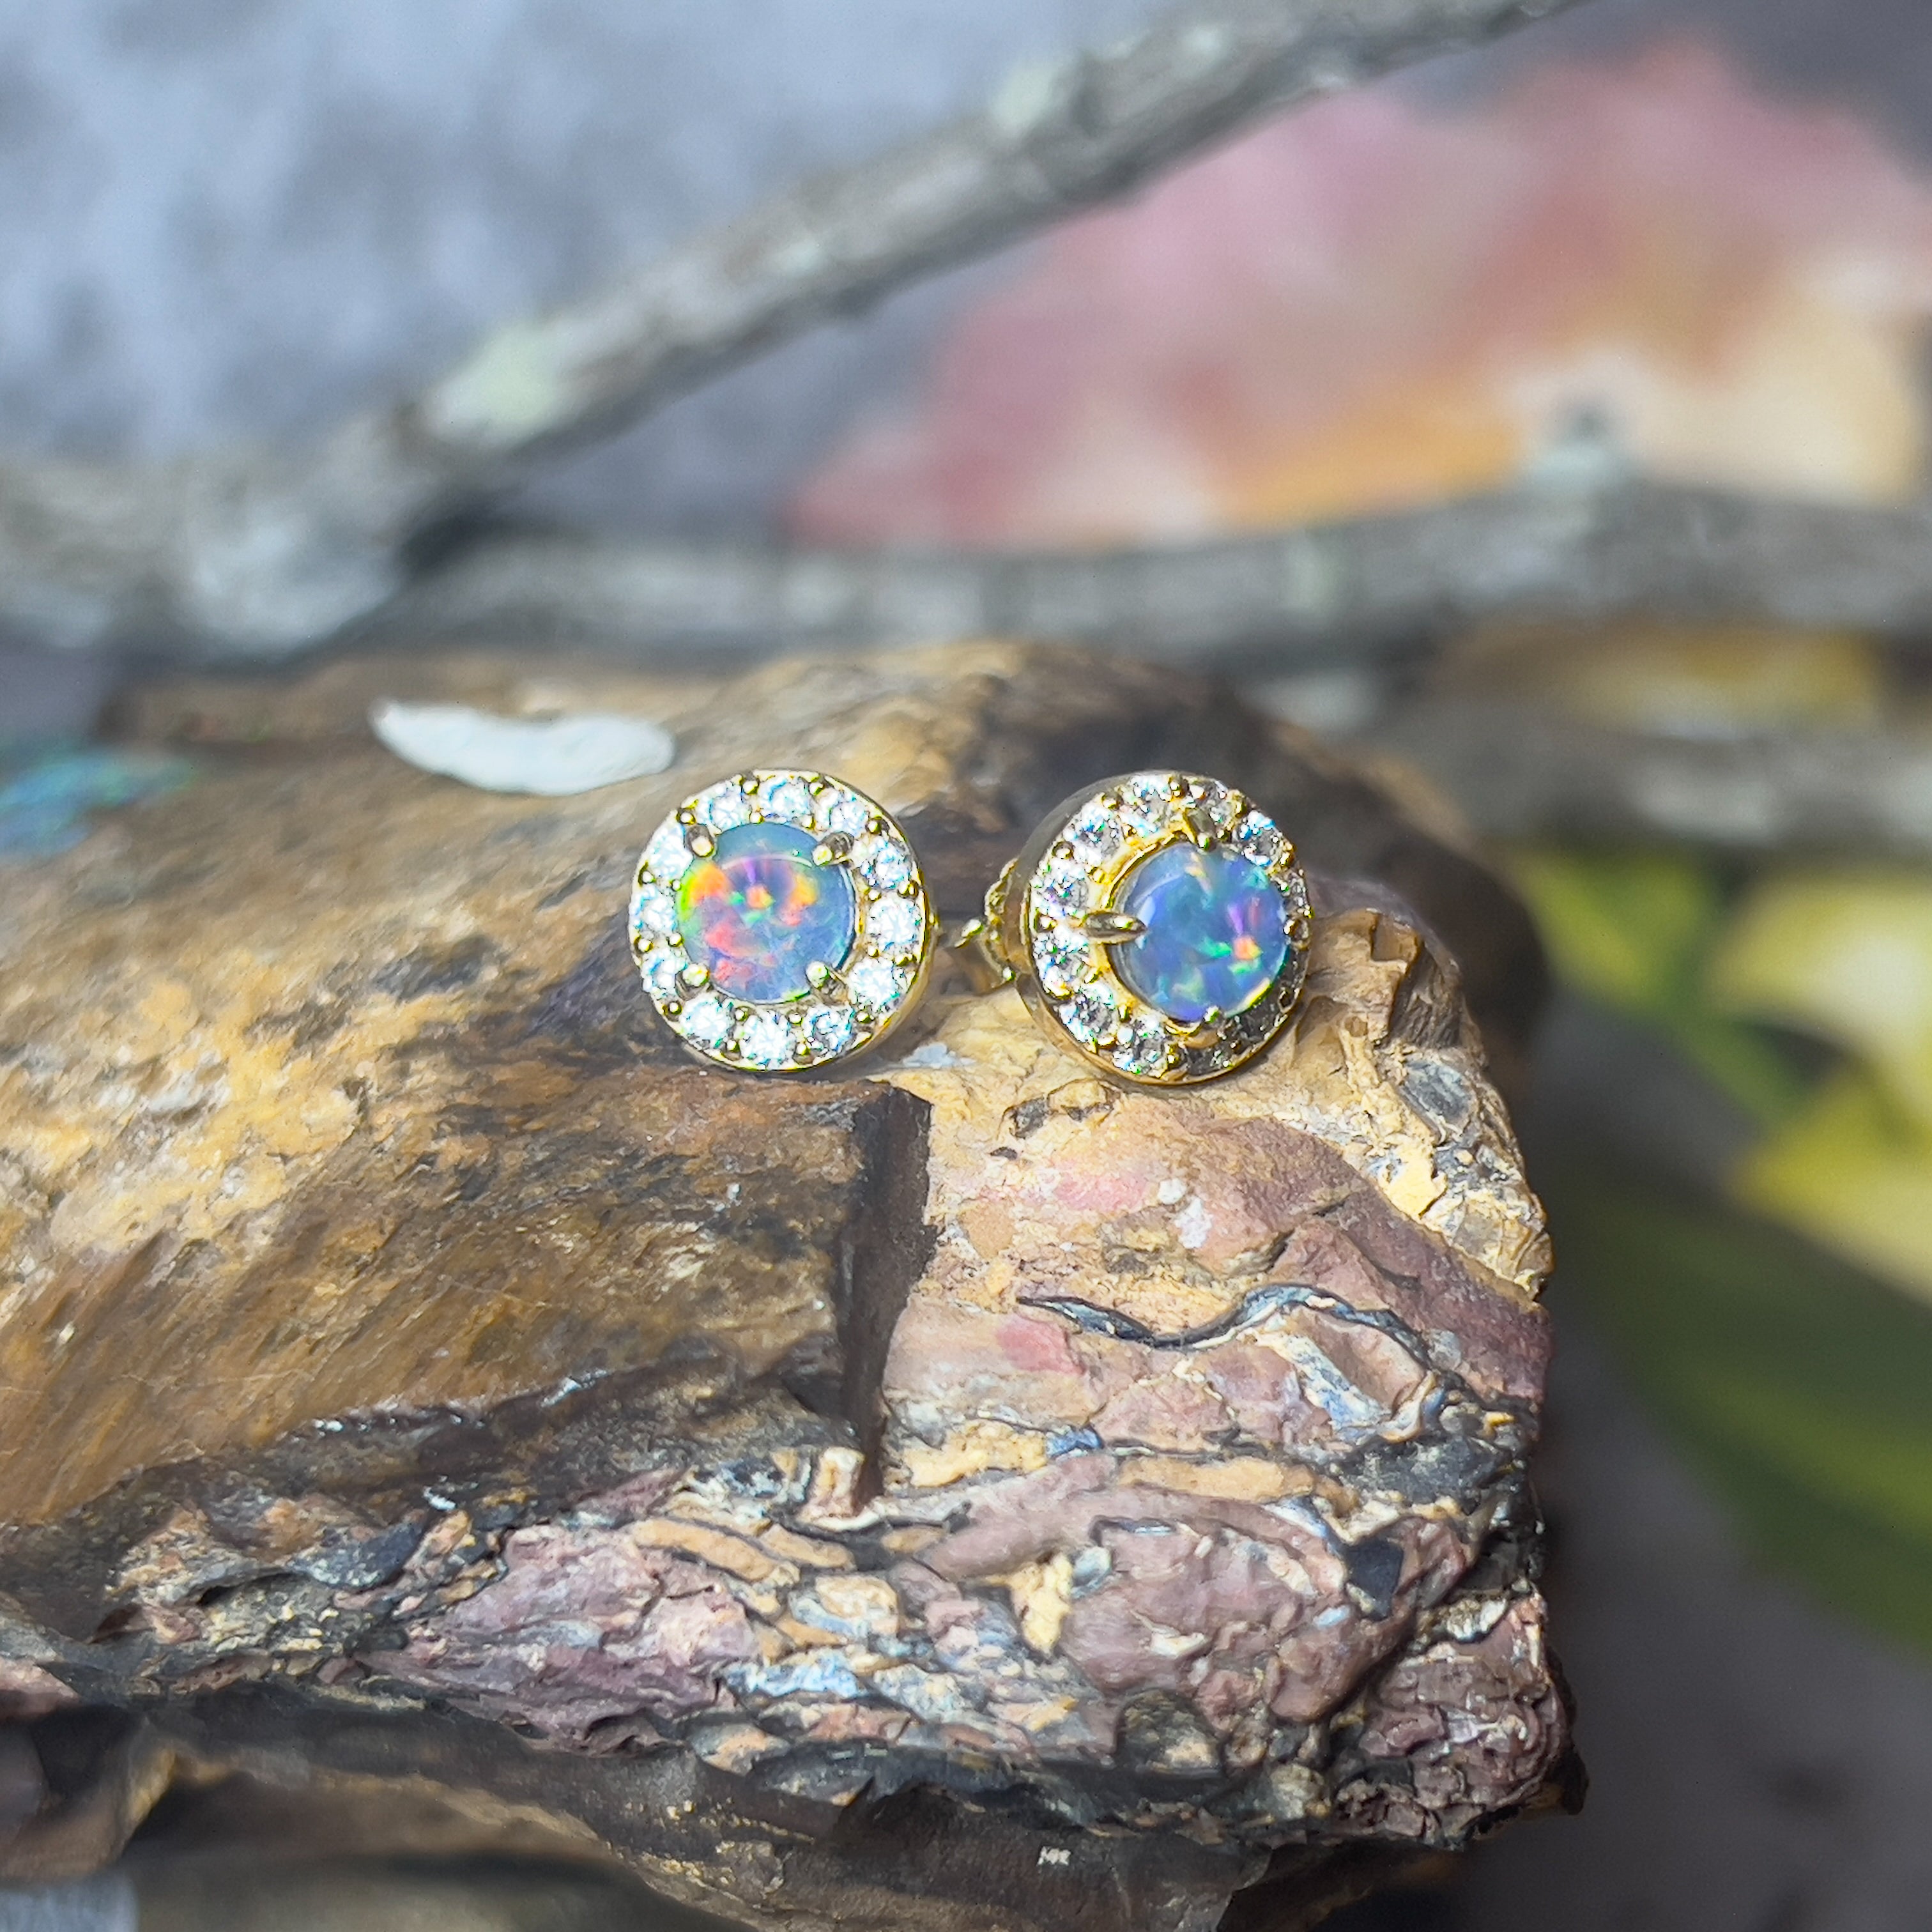 Gold Plated Sterling Silver 5mm Opal triplet halo earring studs - Masterpiece Jewellery Opal & Gems Sydney Australia | Online Shop